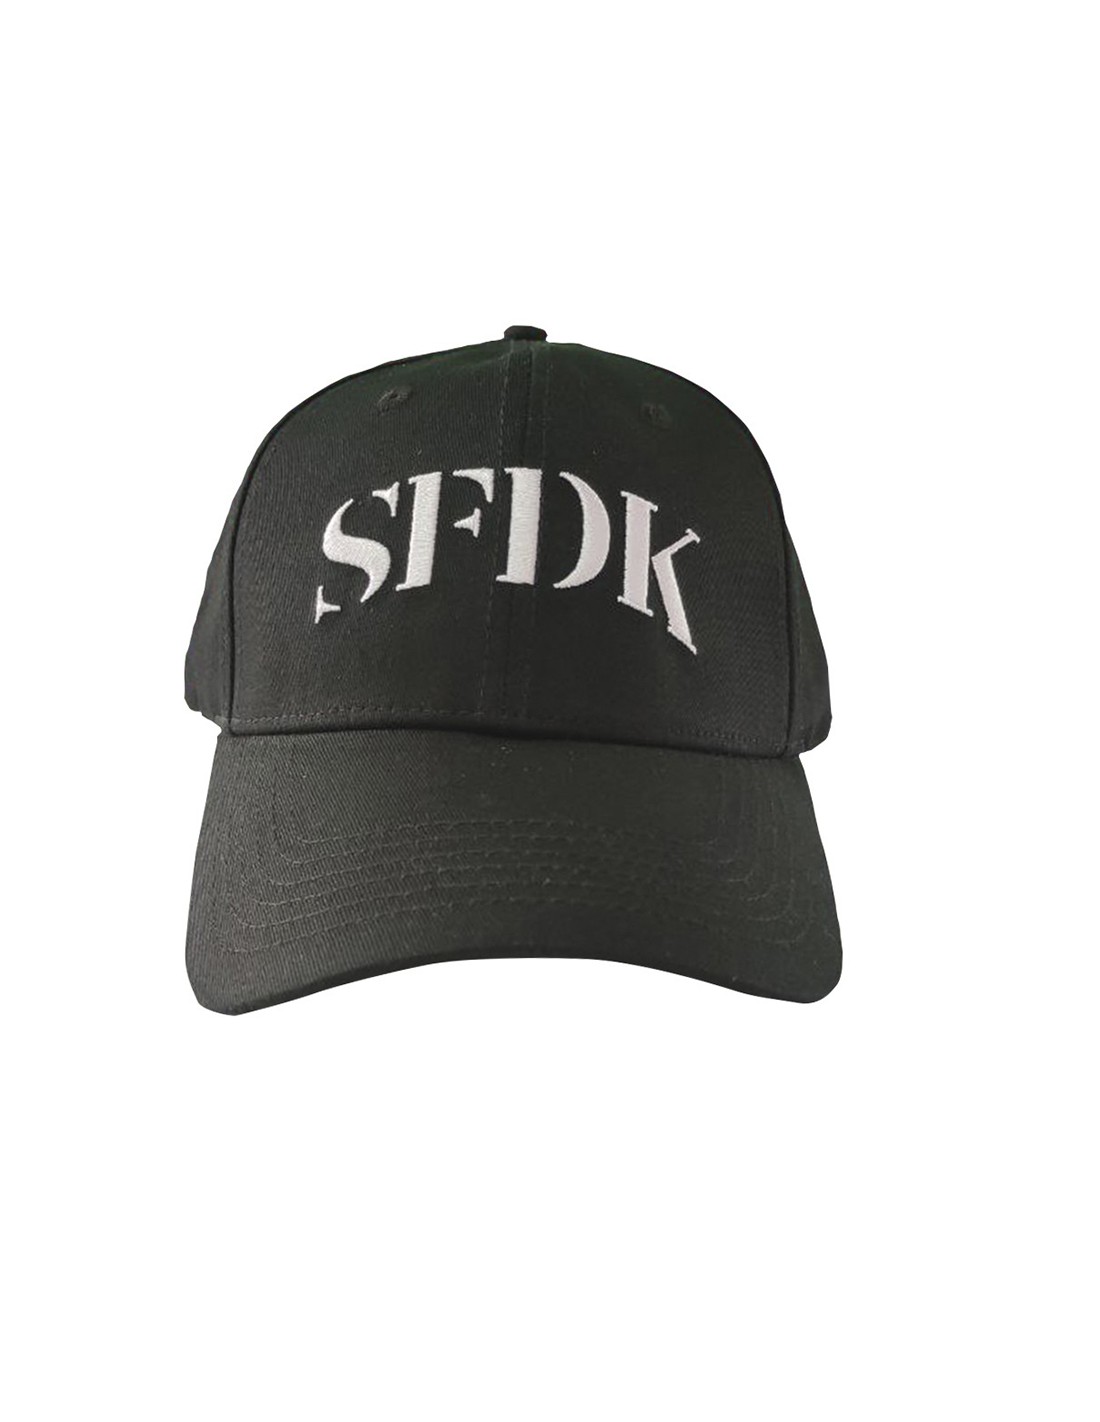 Gorra negra curva "SFDK"